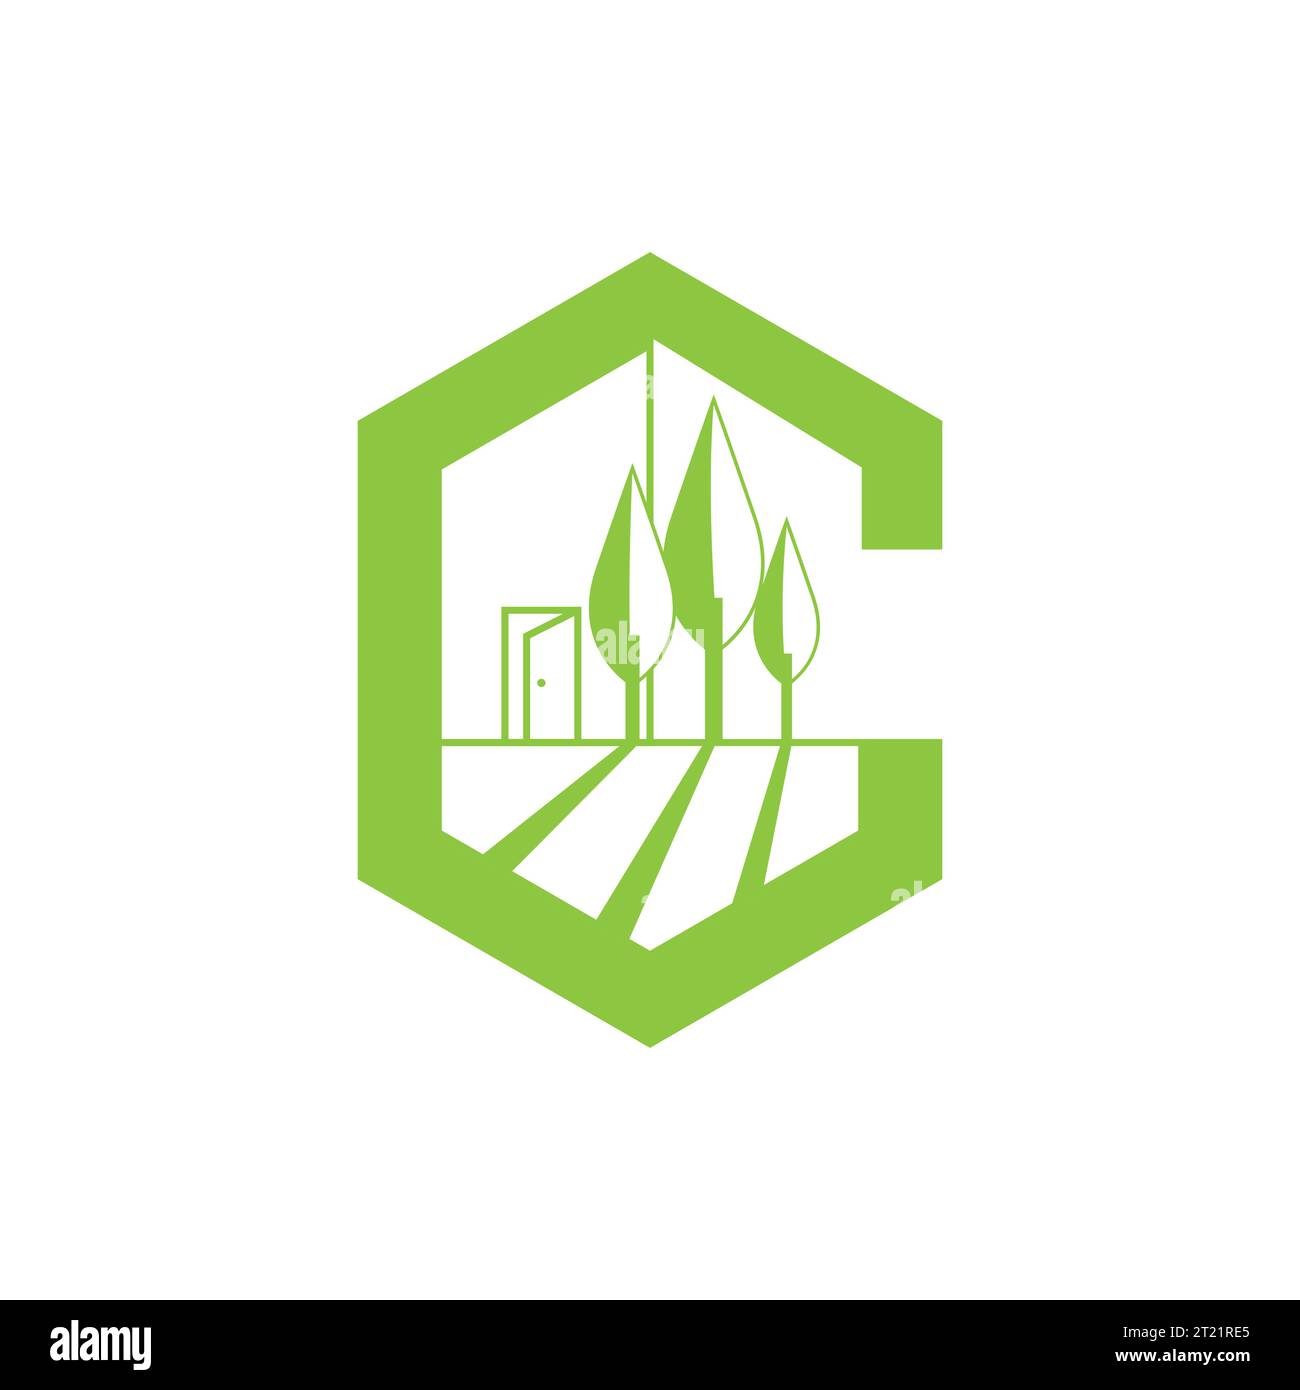 Modernes, einfaches C-Letter-Logo für Landschaftsgestaltung Garden Environment Service. Landschaftsdesign, Garten, Pflanze, Natur und Ökologie Vektor. Stock Vektor